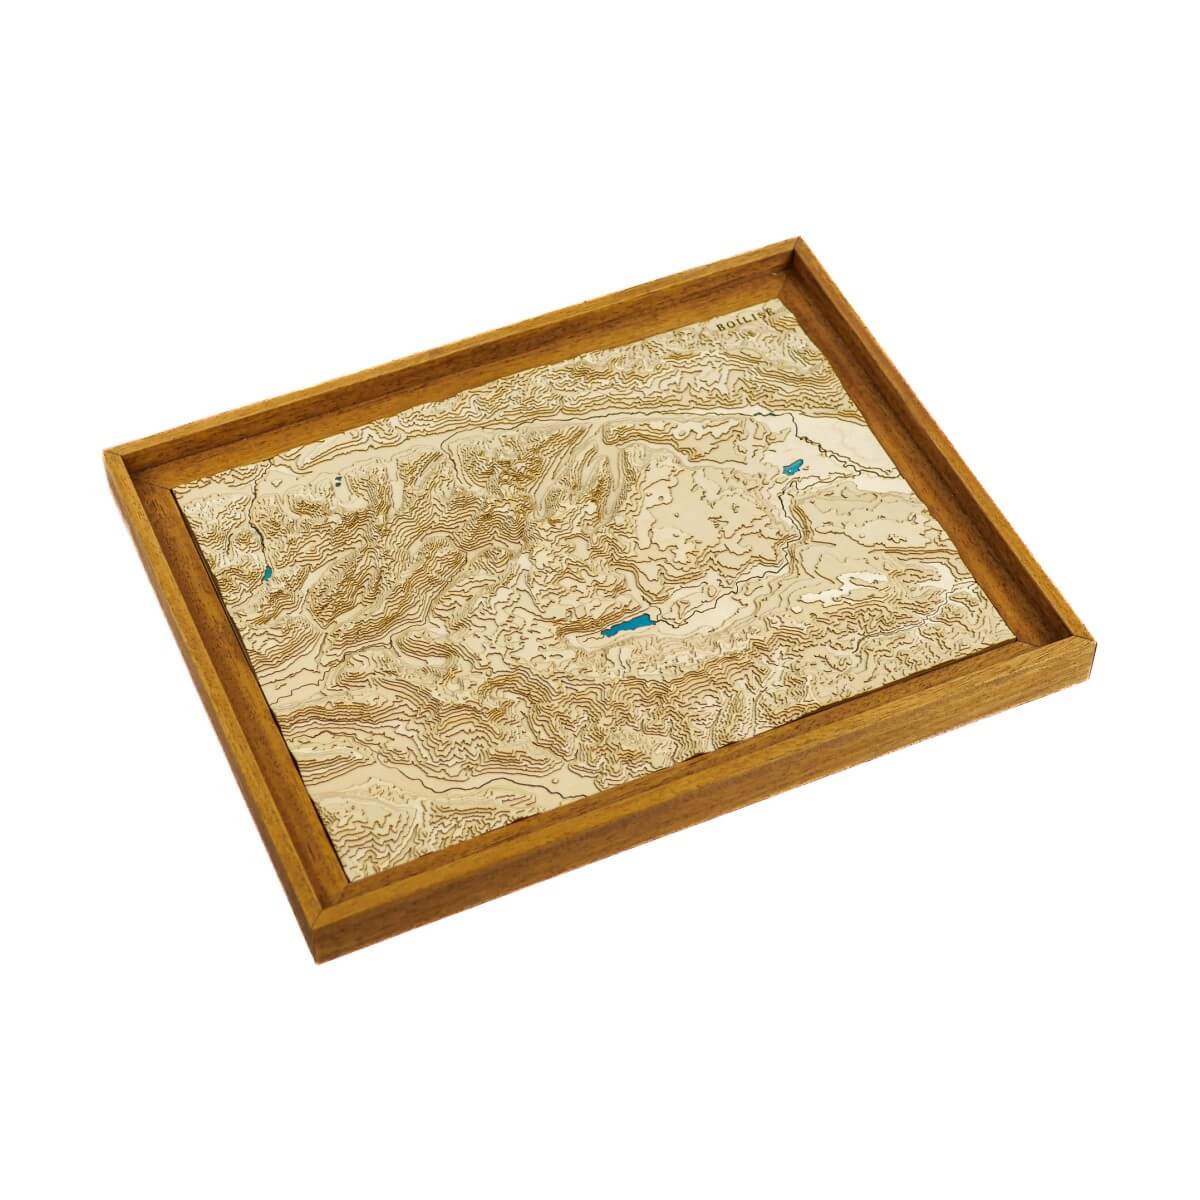 La carte topographique en bois et en relief des Alpes Juliennes, pour découvrir les montagnes slovènes en 3D